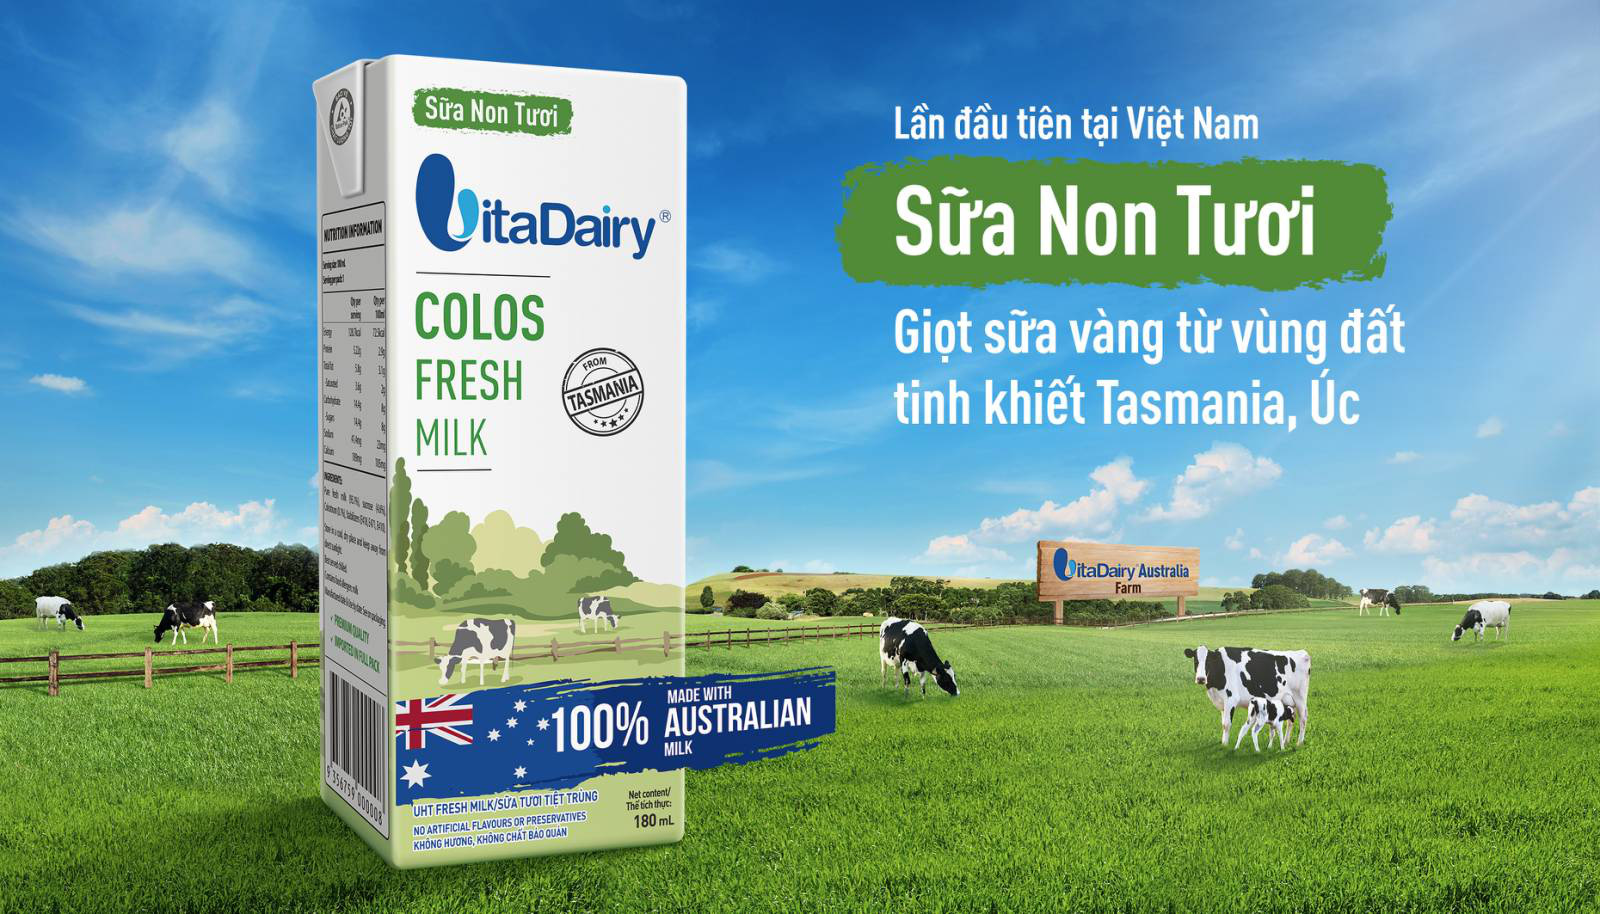 Sữa non tươi nhập khẩu 100% Úc đa dạng hóa lựa chọn cho mẹ Việt thông thái - Ảnh 1.